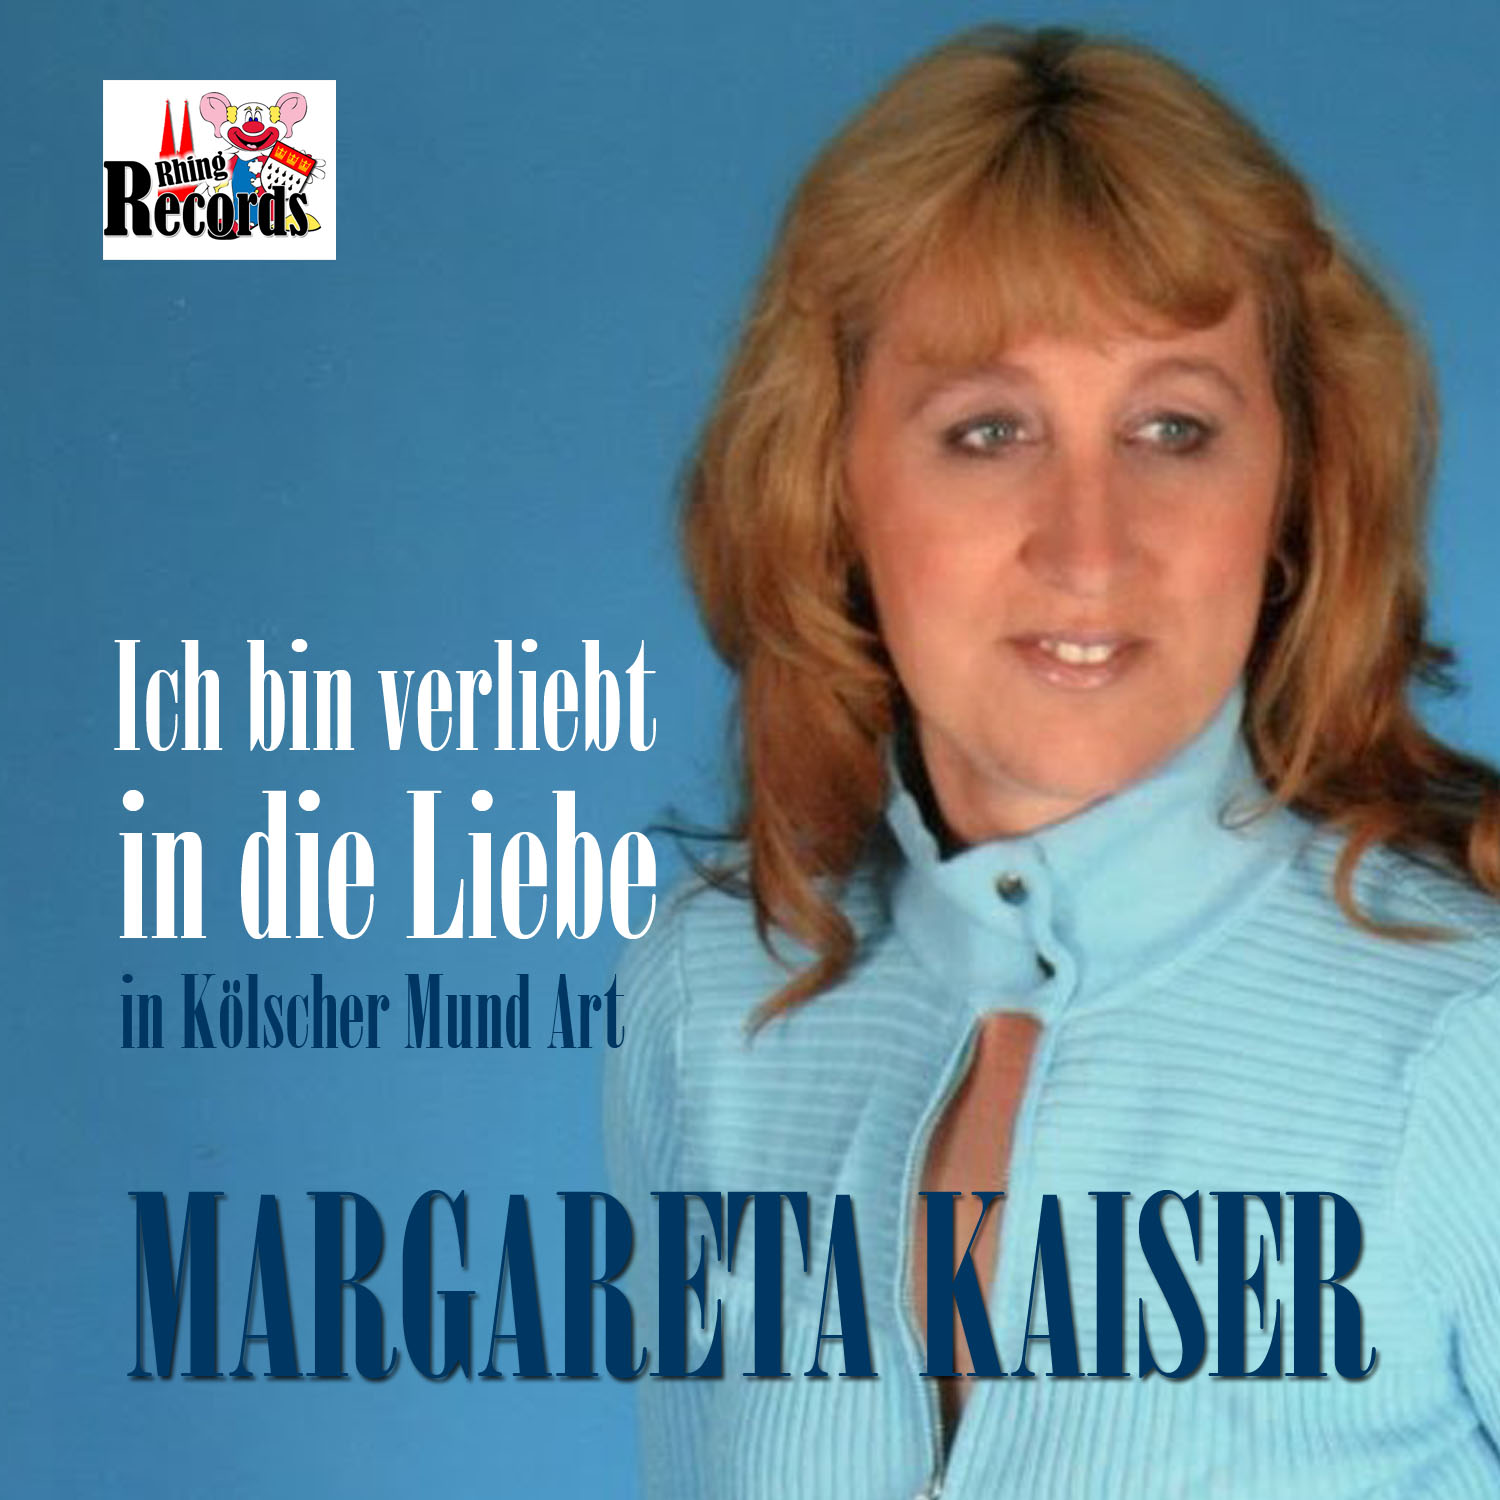 Margareta Kaiser